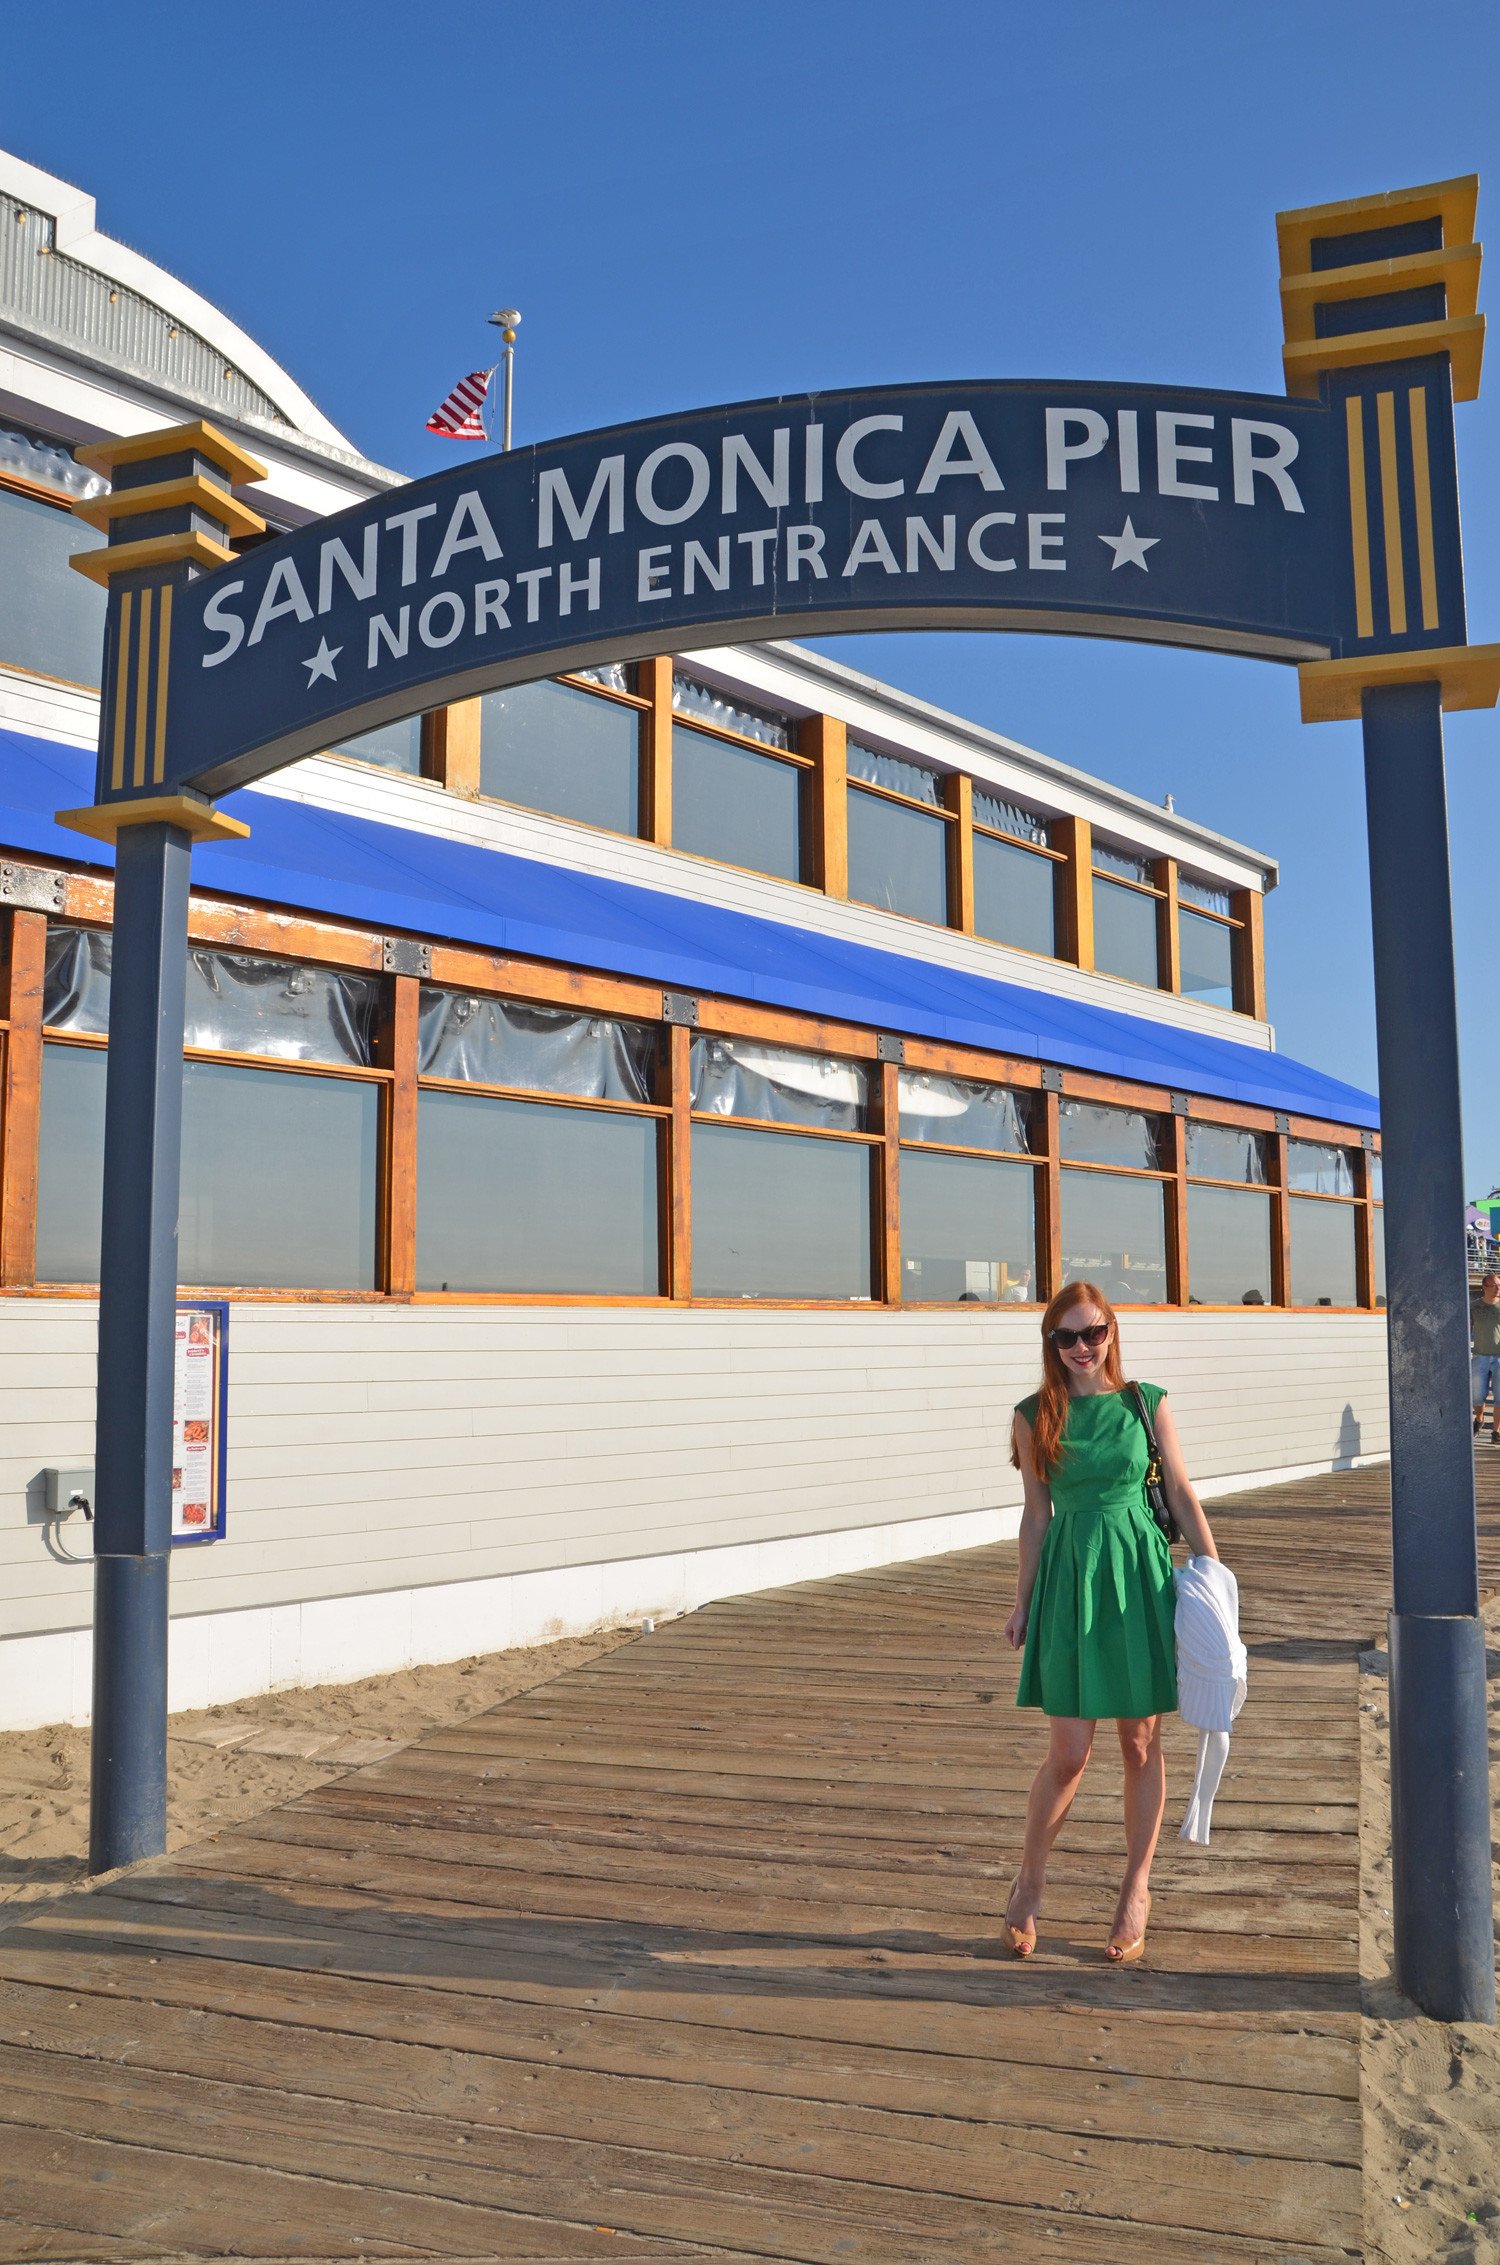 The entrance to Santa Monica Pier